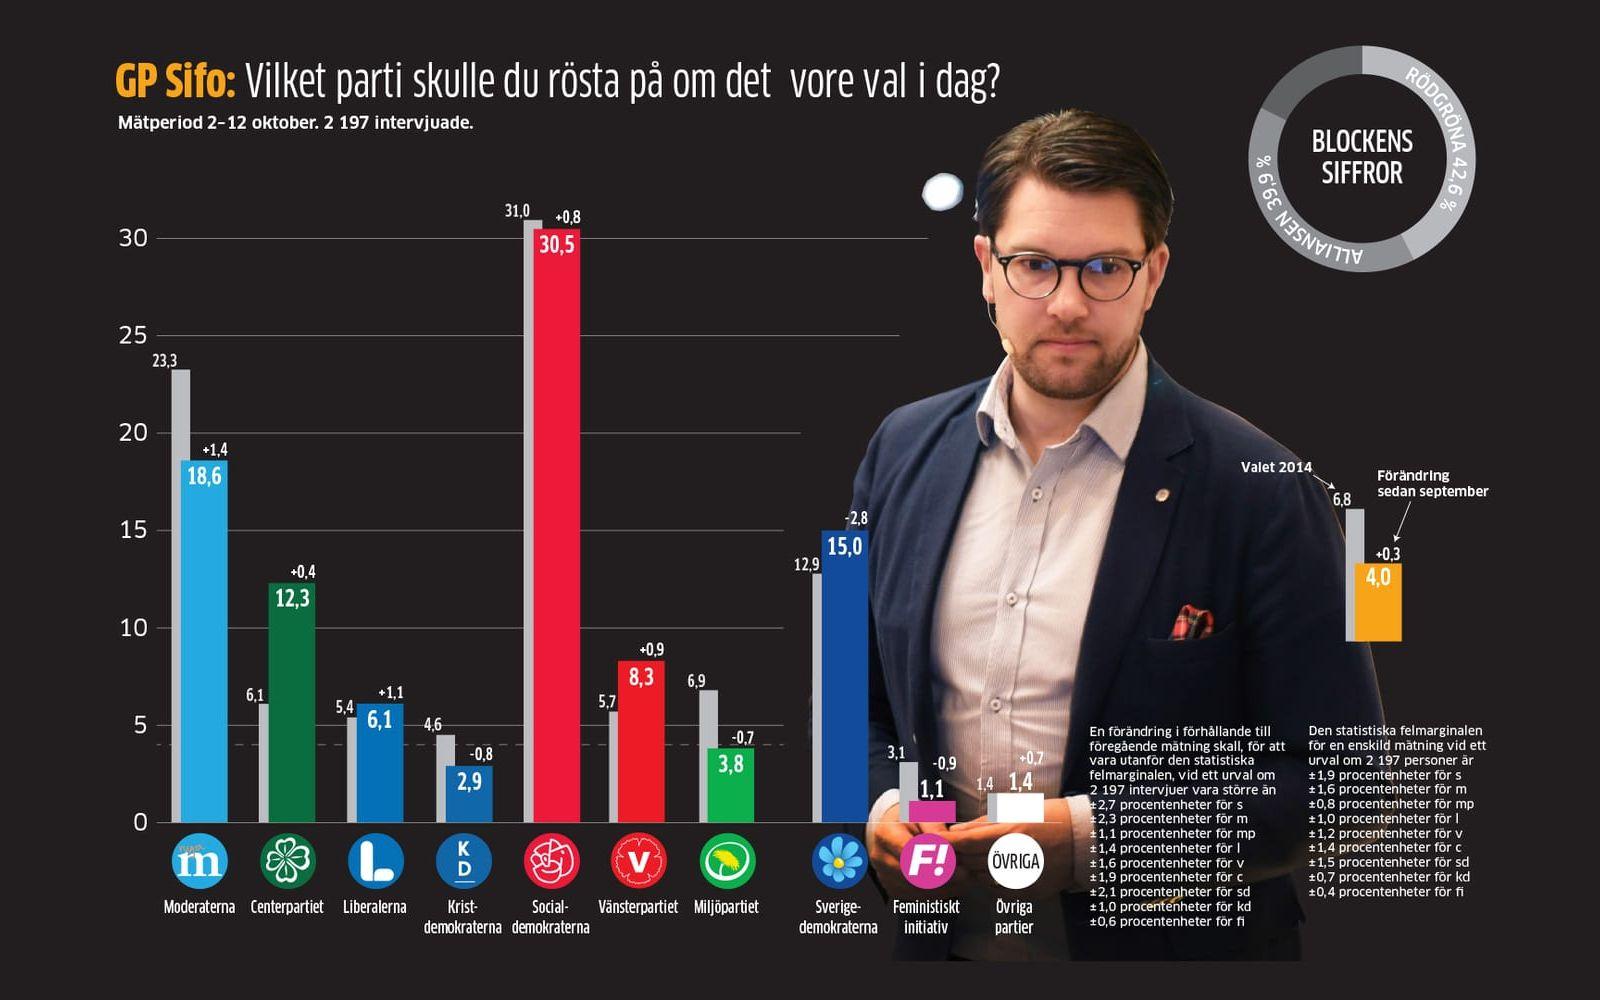 Sverigedemokraterna tappar väljare till bland annat Moderaterna, som lyckats stämma väljarflödet från det egna partiet. Bild: GP